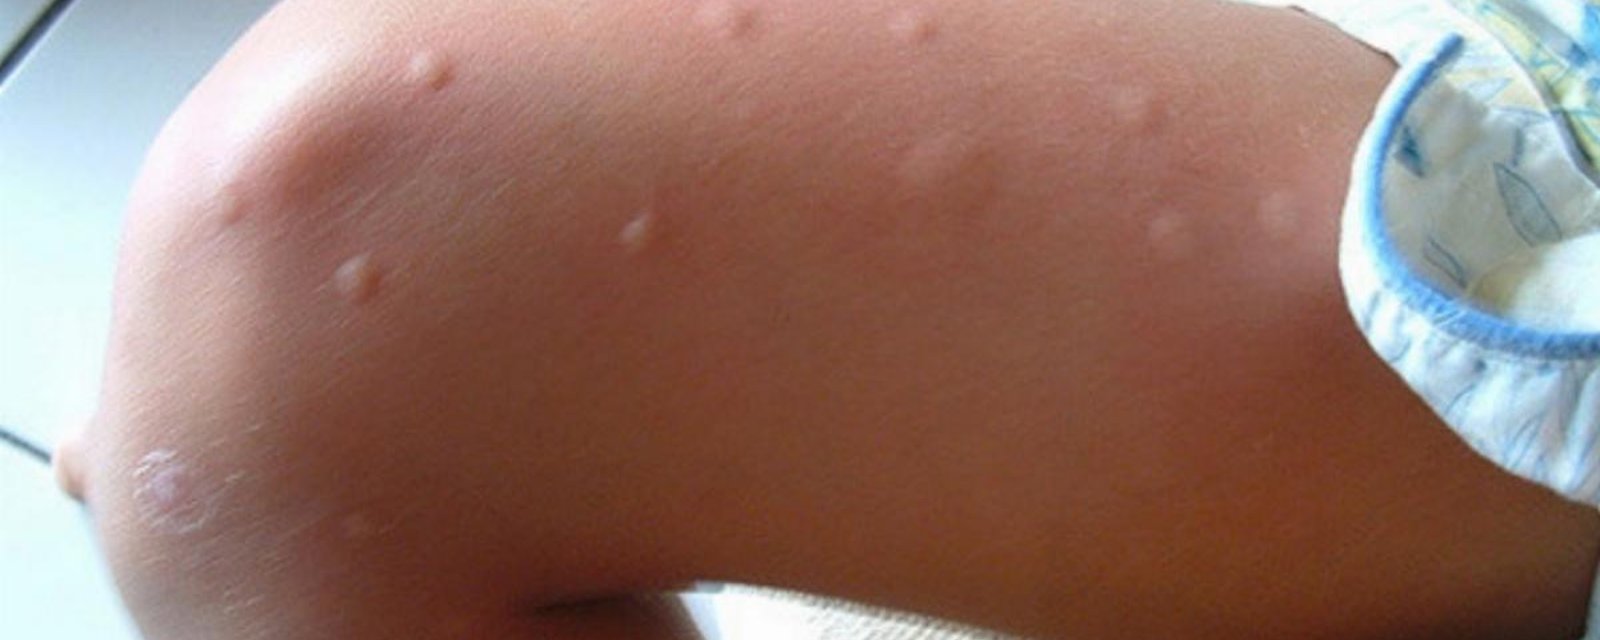 Je me suis toujours demandé pourquoi les moustiques me piquaient toujours plus que les autres! Maintenant je sais! 